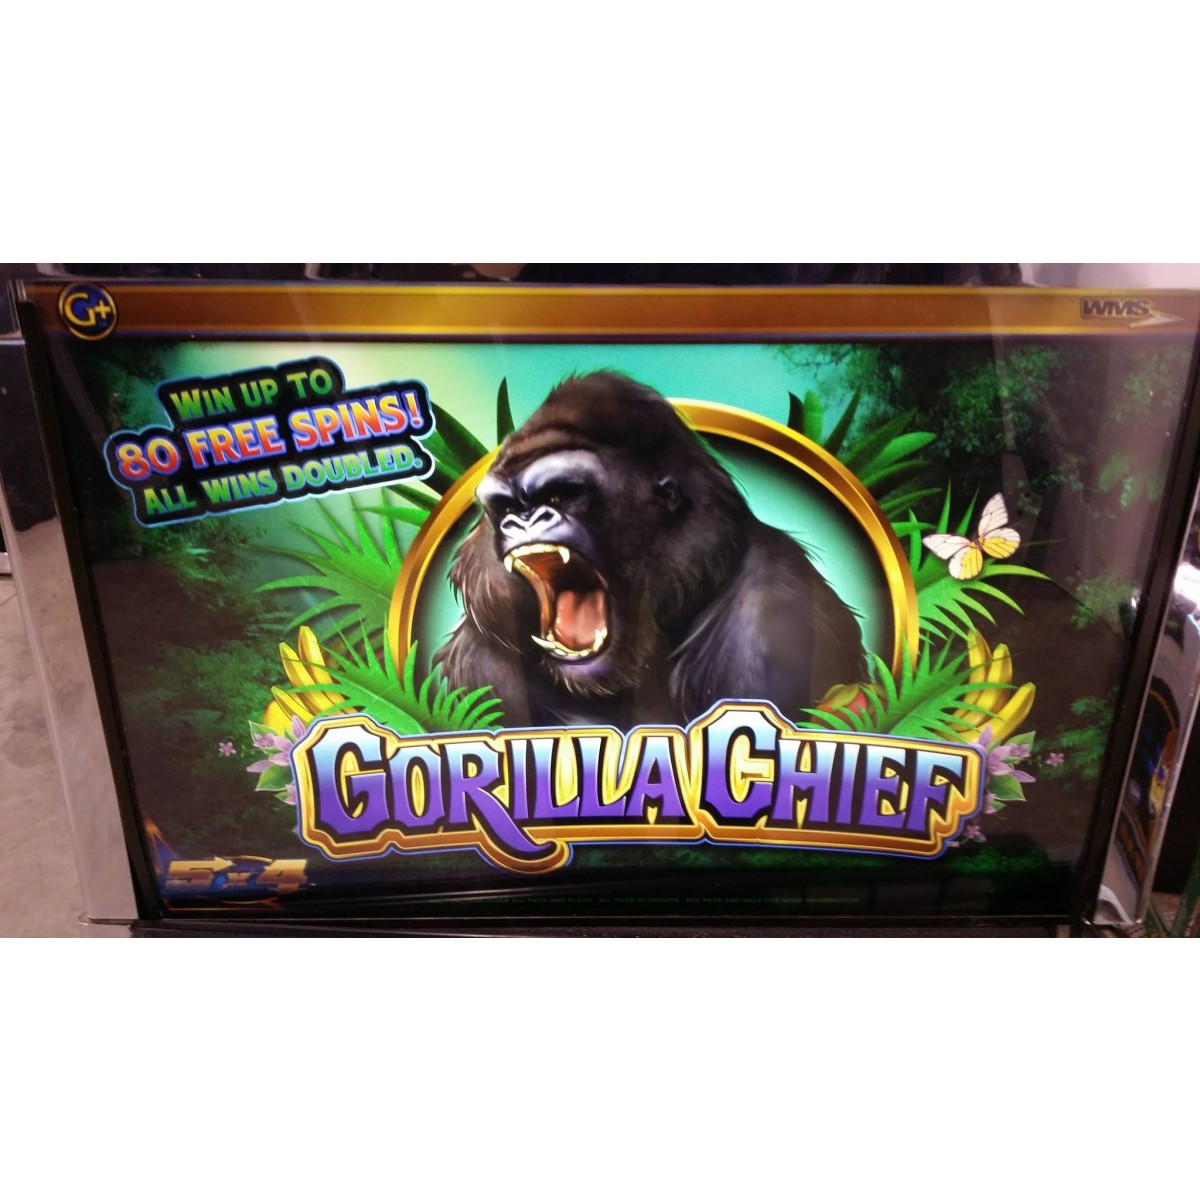 gorilla chief slot machine online free